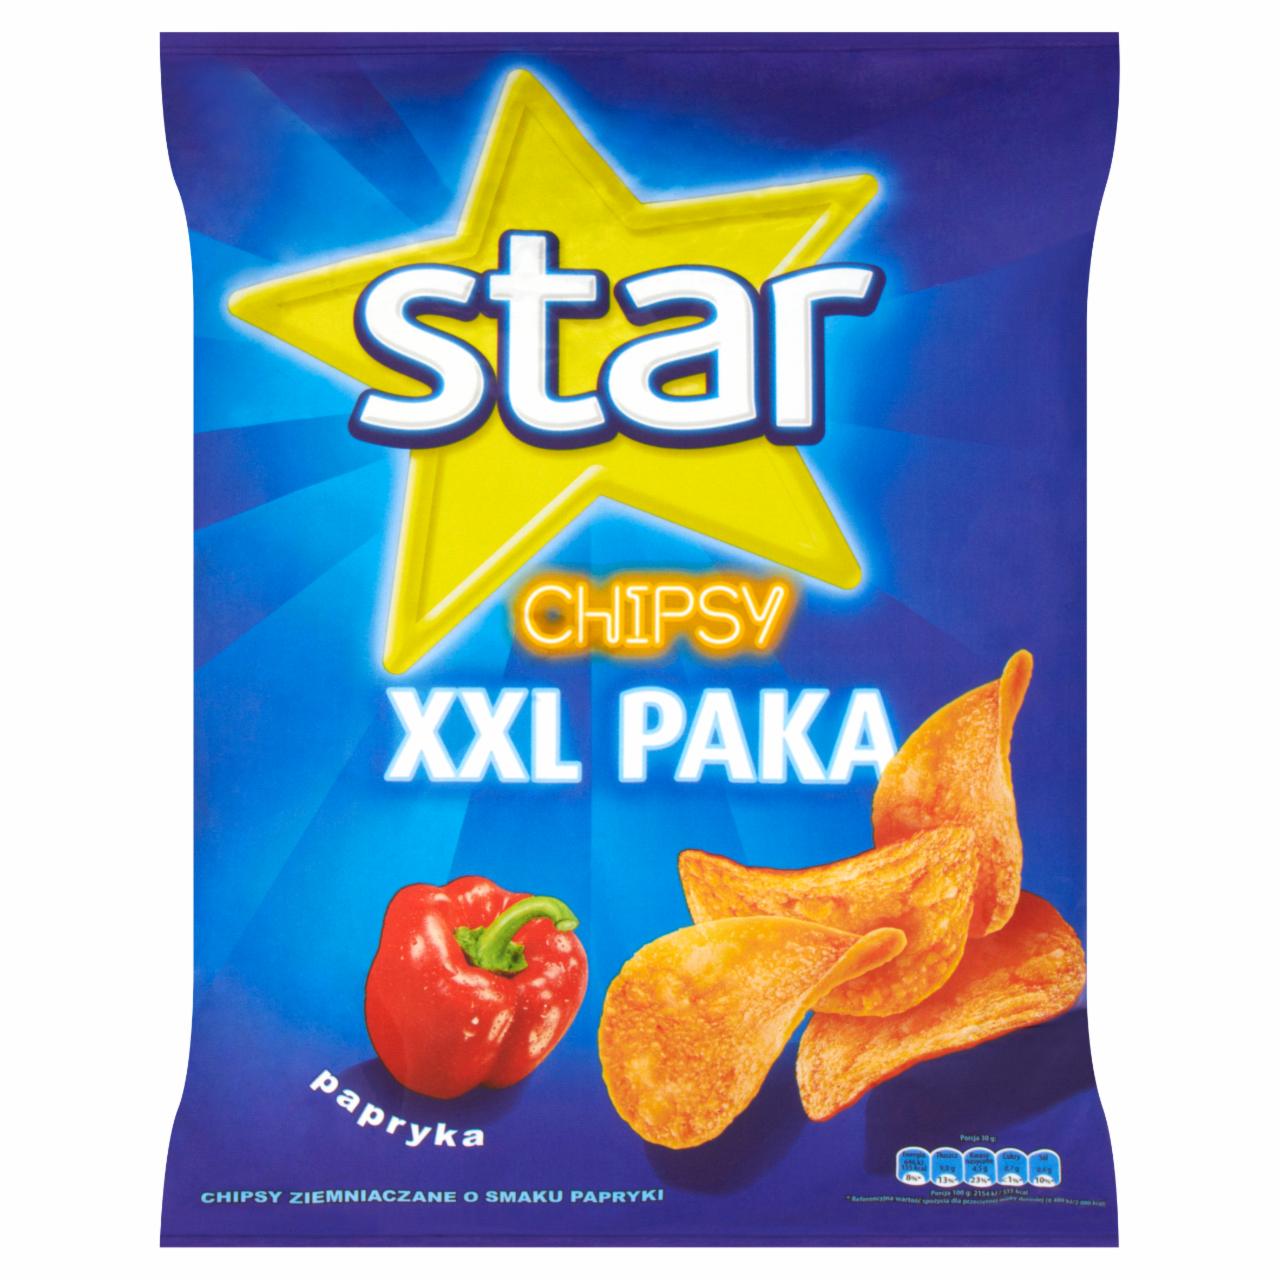 Zdjęcia - Star Chipsy papryka 290 g